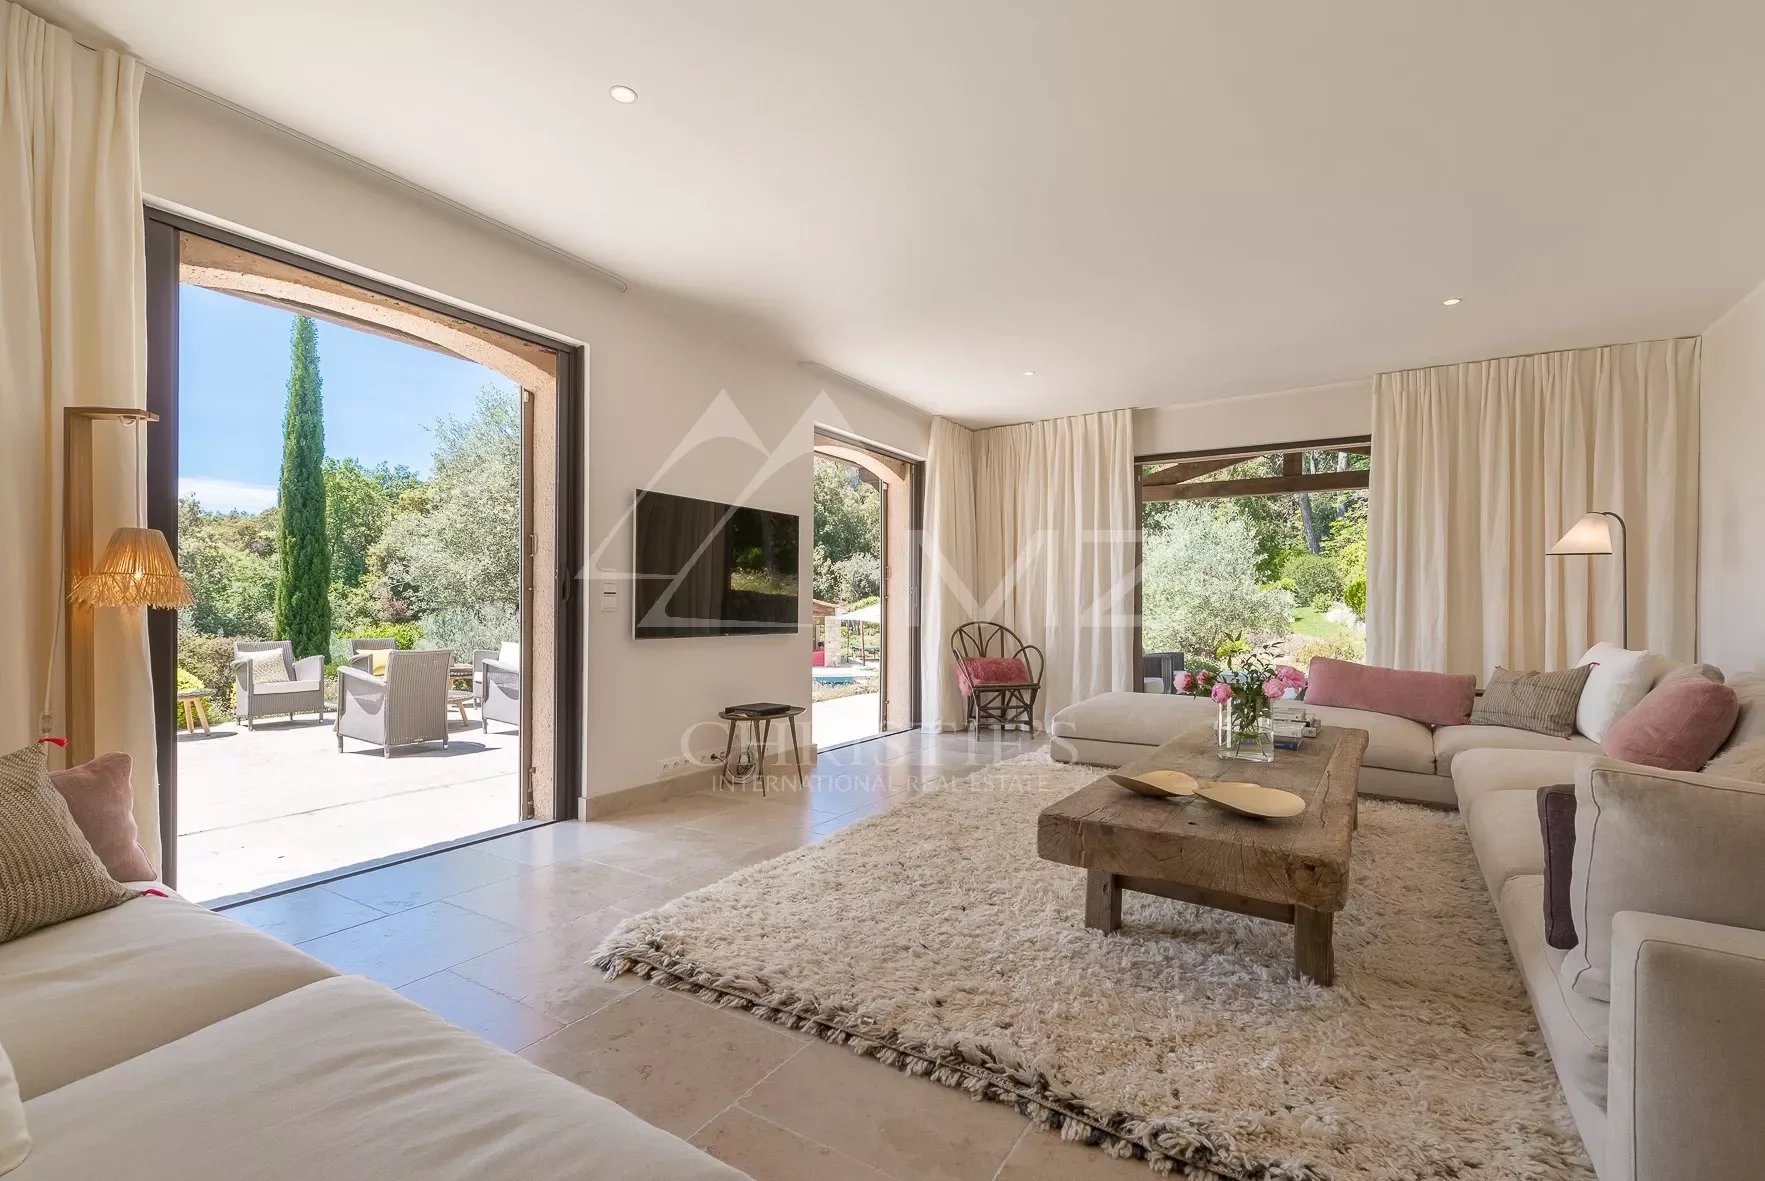 Cannes hinterland - Superb villa in a prestigious gated domain